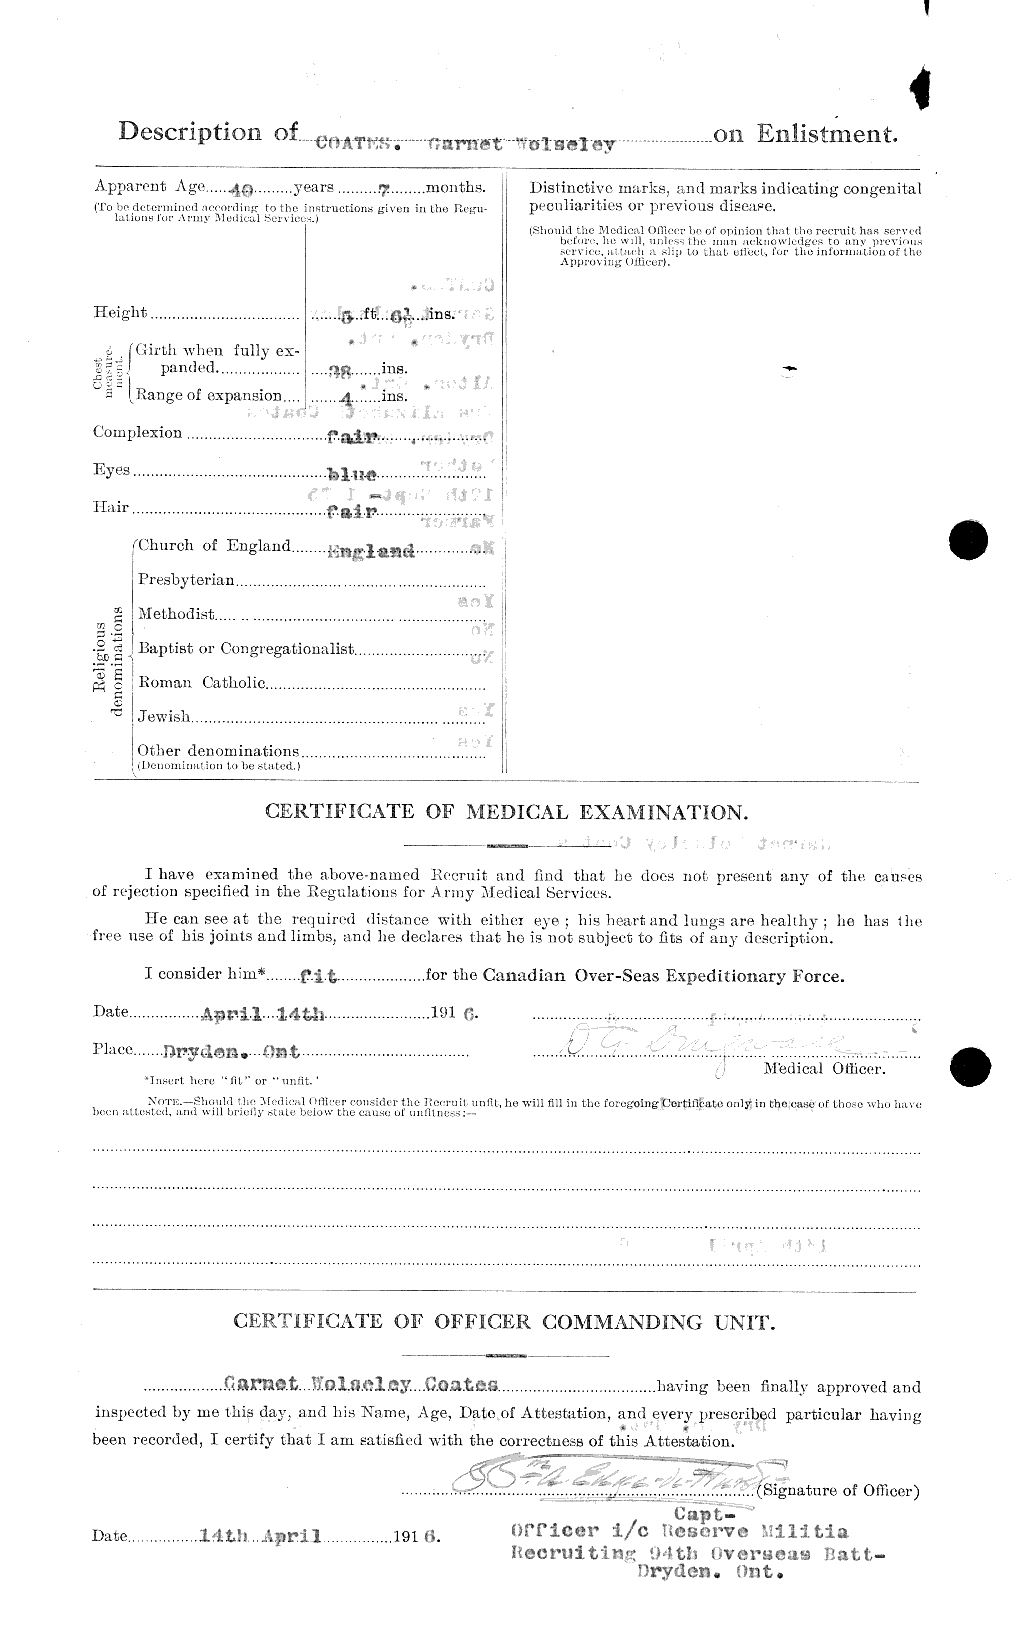 Dossiers du Personnel de la Première Guerre mondiale - CEC 025629b